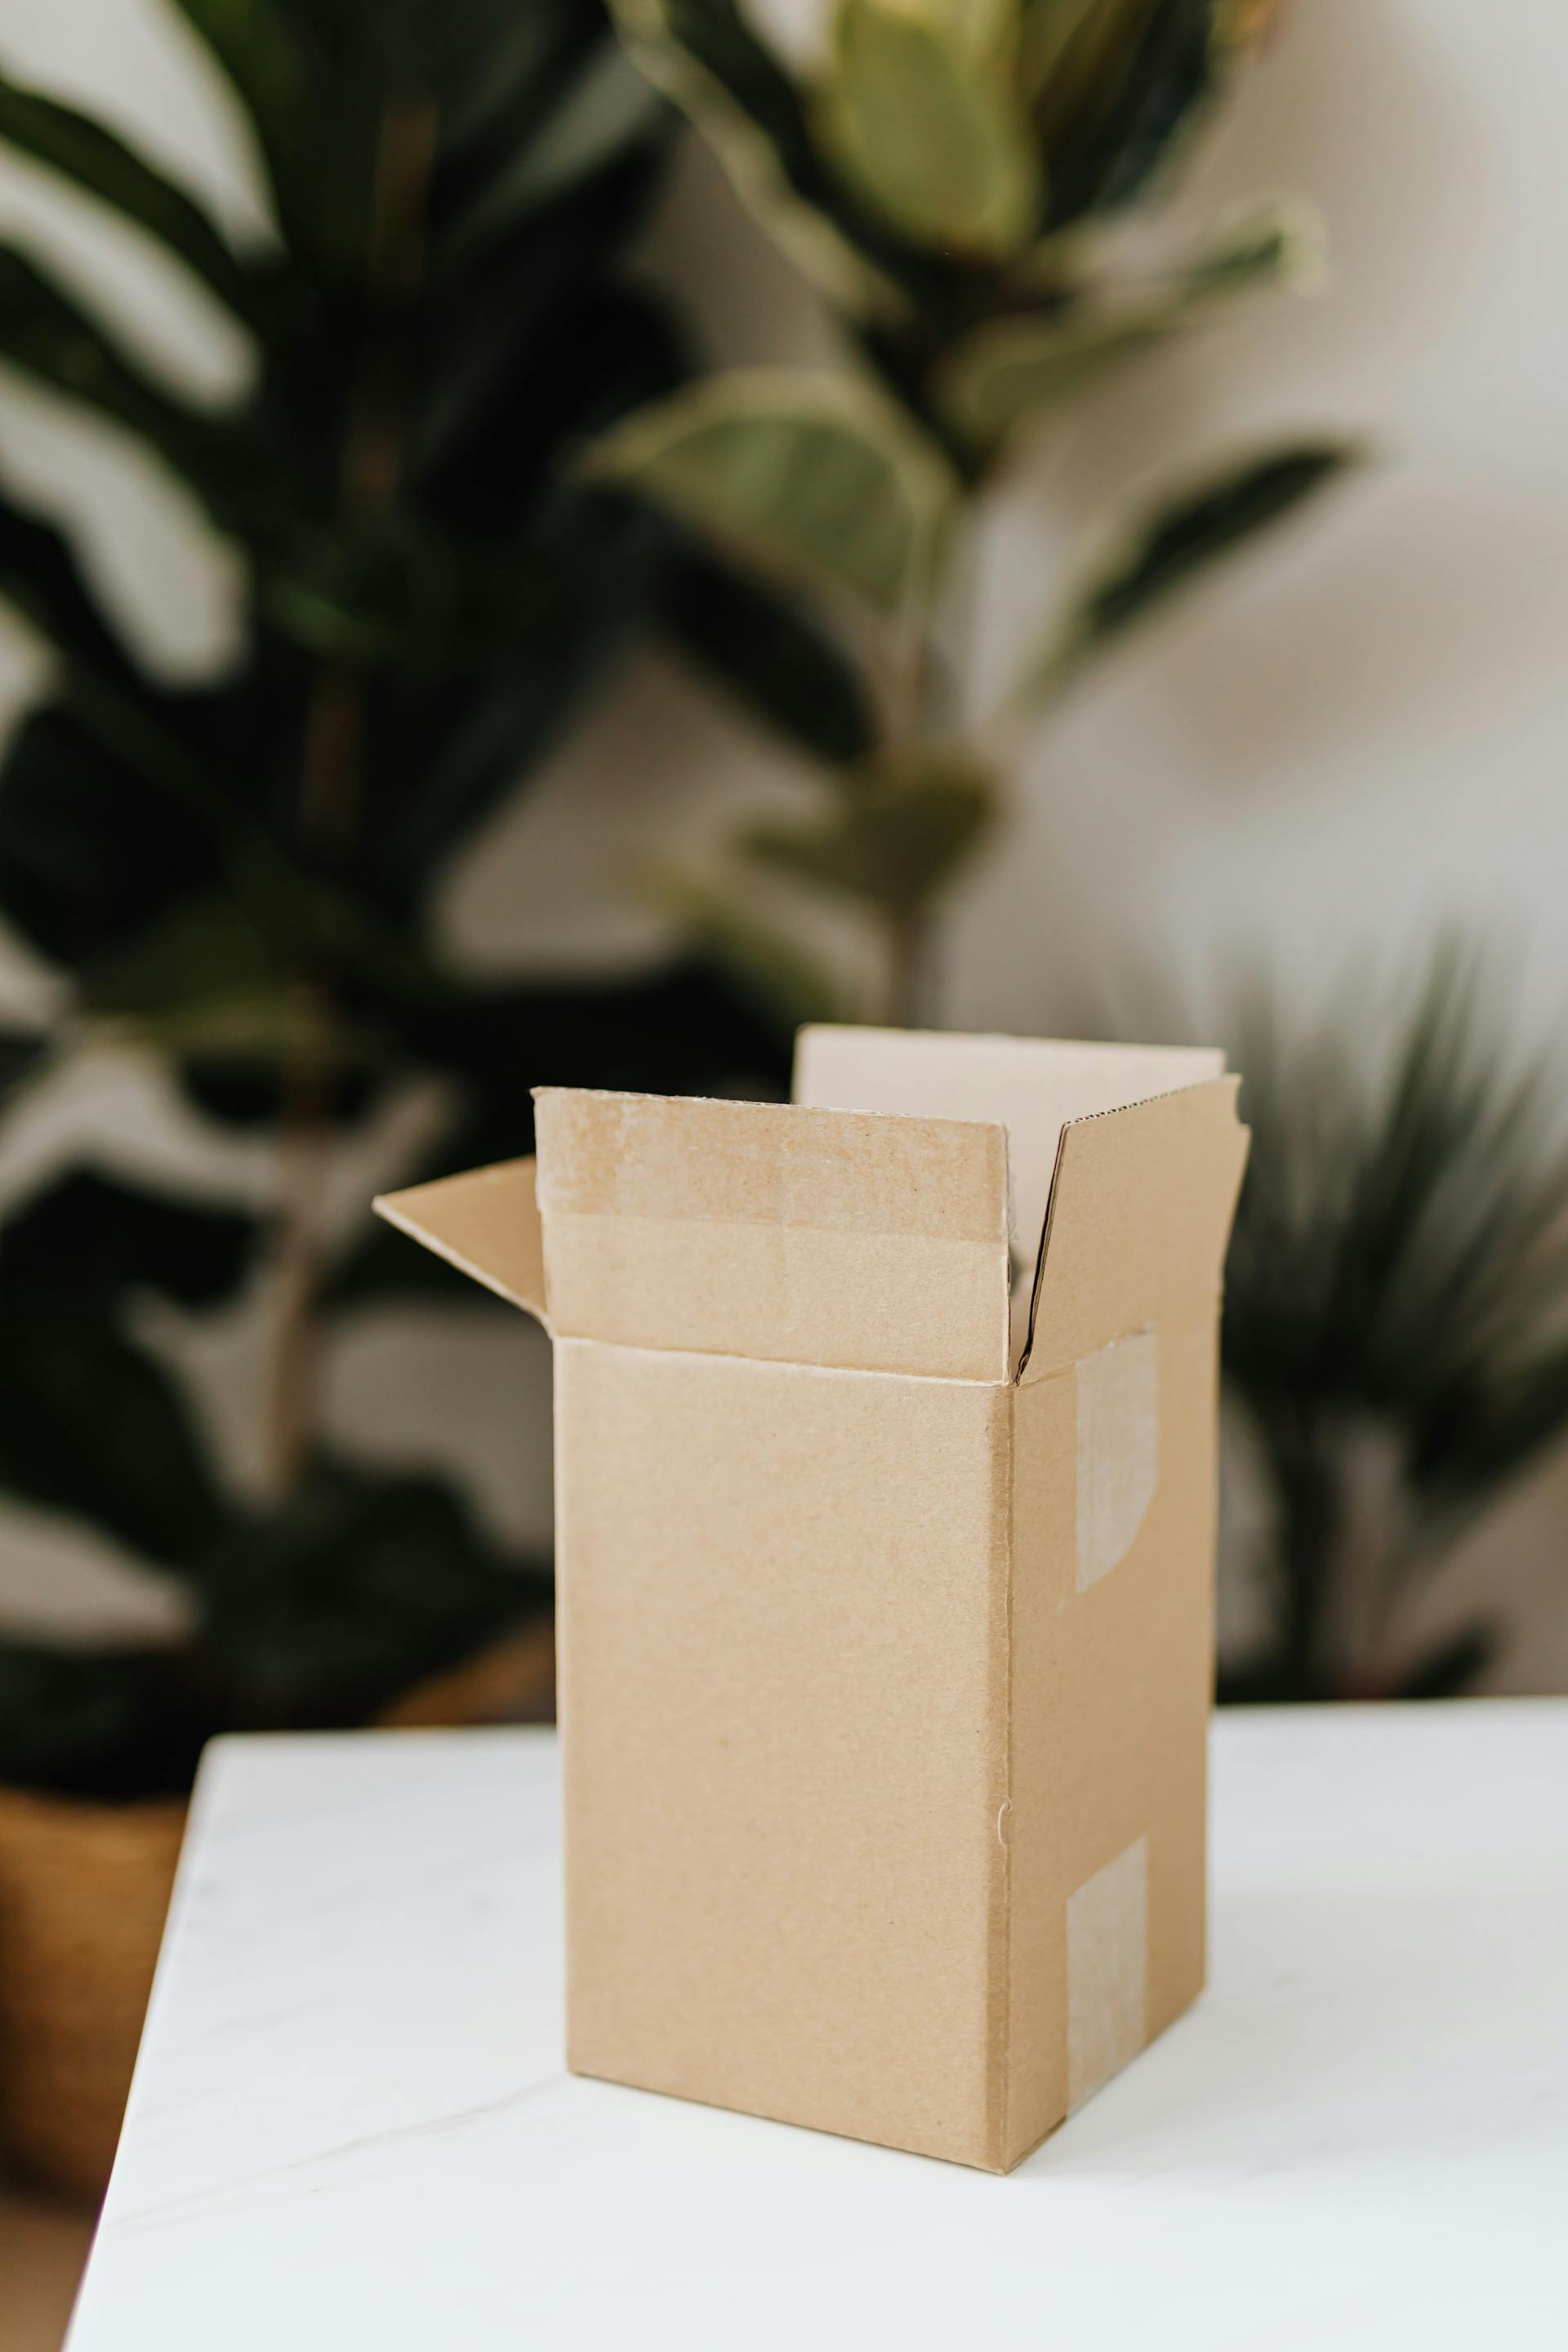 Una caja de cartón sobre una mesa | Fuente: Pexels